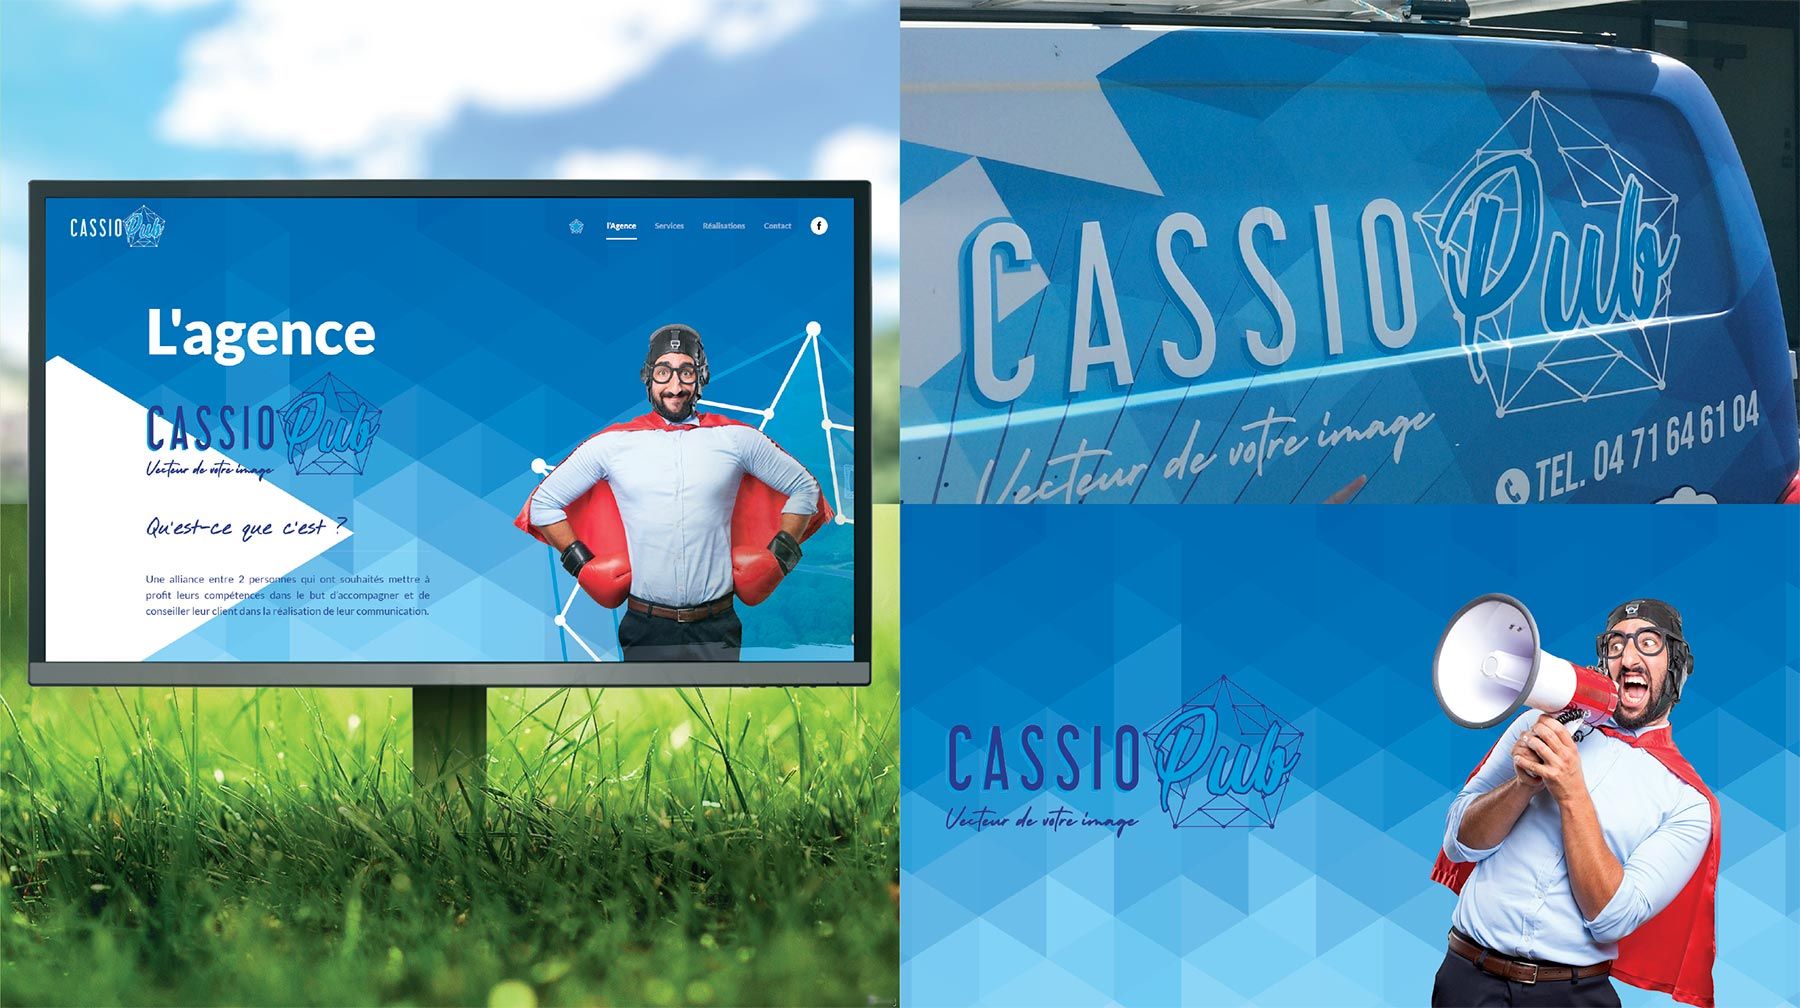 Cassio pub, spécialiste des vitrines, signalétique et habillage de véhicule